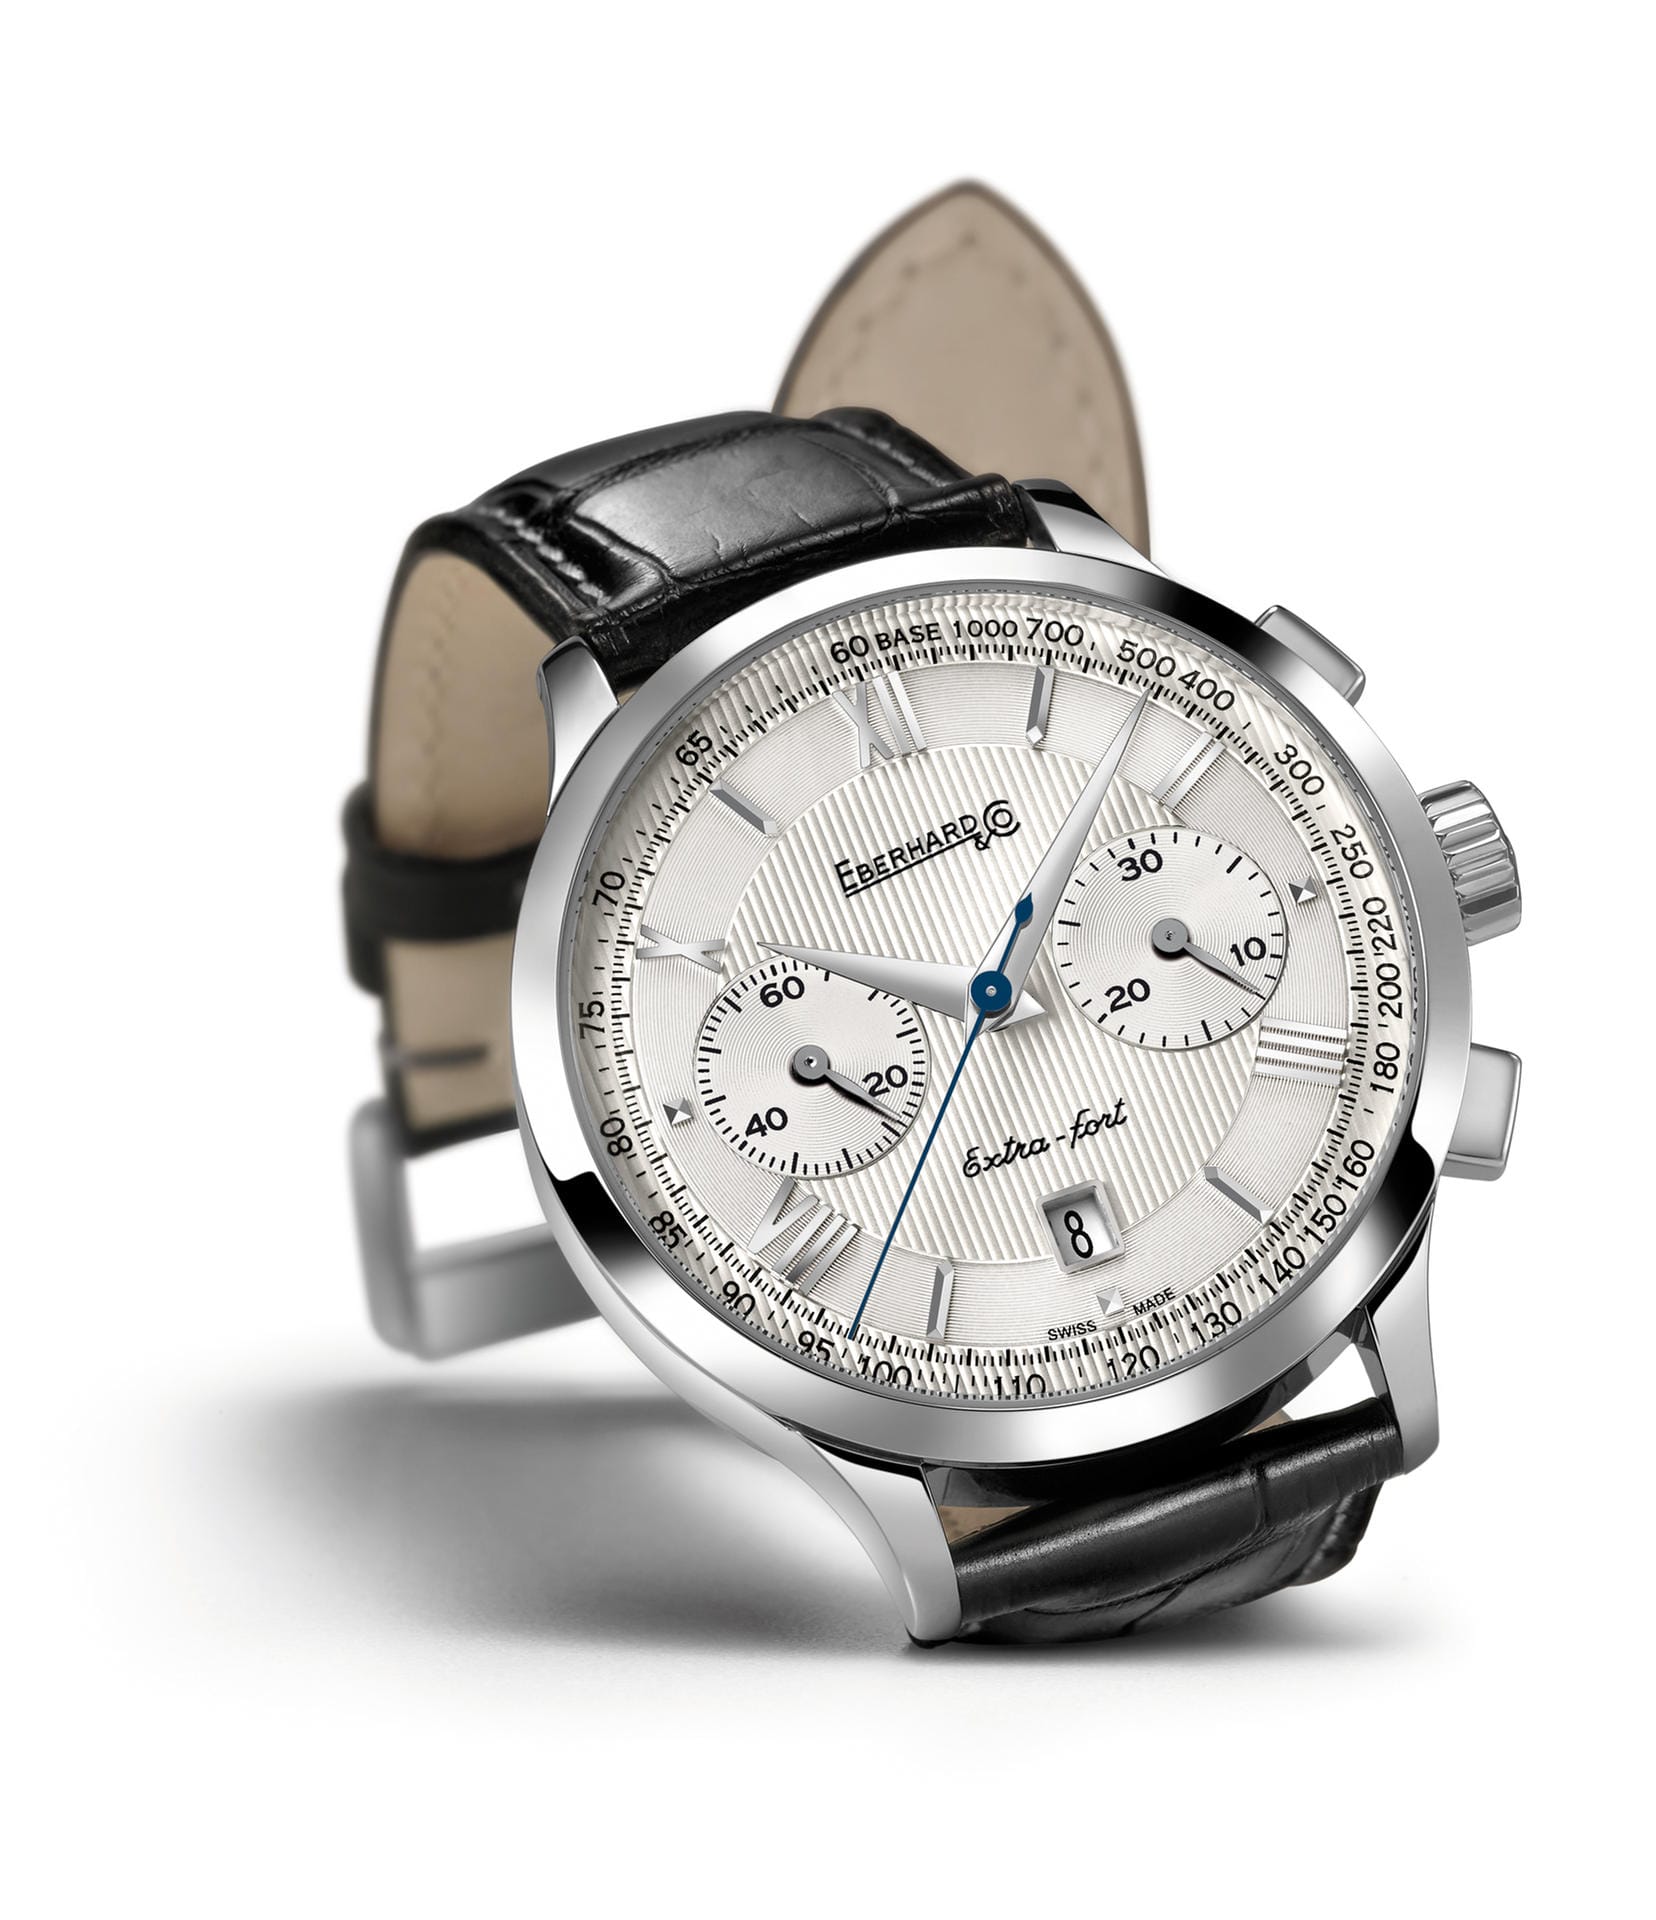 Auf der Baselworld präsentiert Eberhard & Co. die “Grande Taille”-Version des Modells Extra-fort in einem eleganten neuen Look. Die Extra-fort gehört zu den charakteristischsten Modellen des Schweizer Uhrenherstellers. Vier neue Ziffernblattvarianten soll es geben,